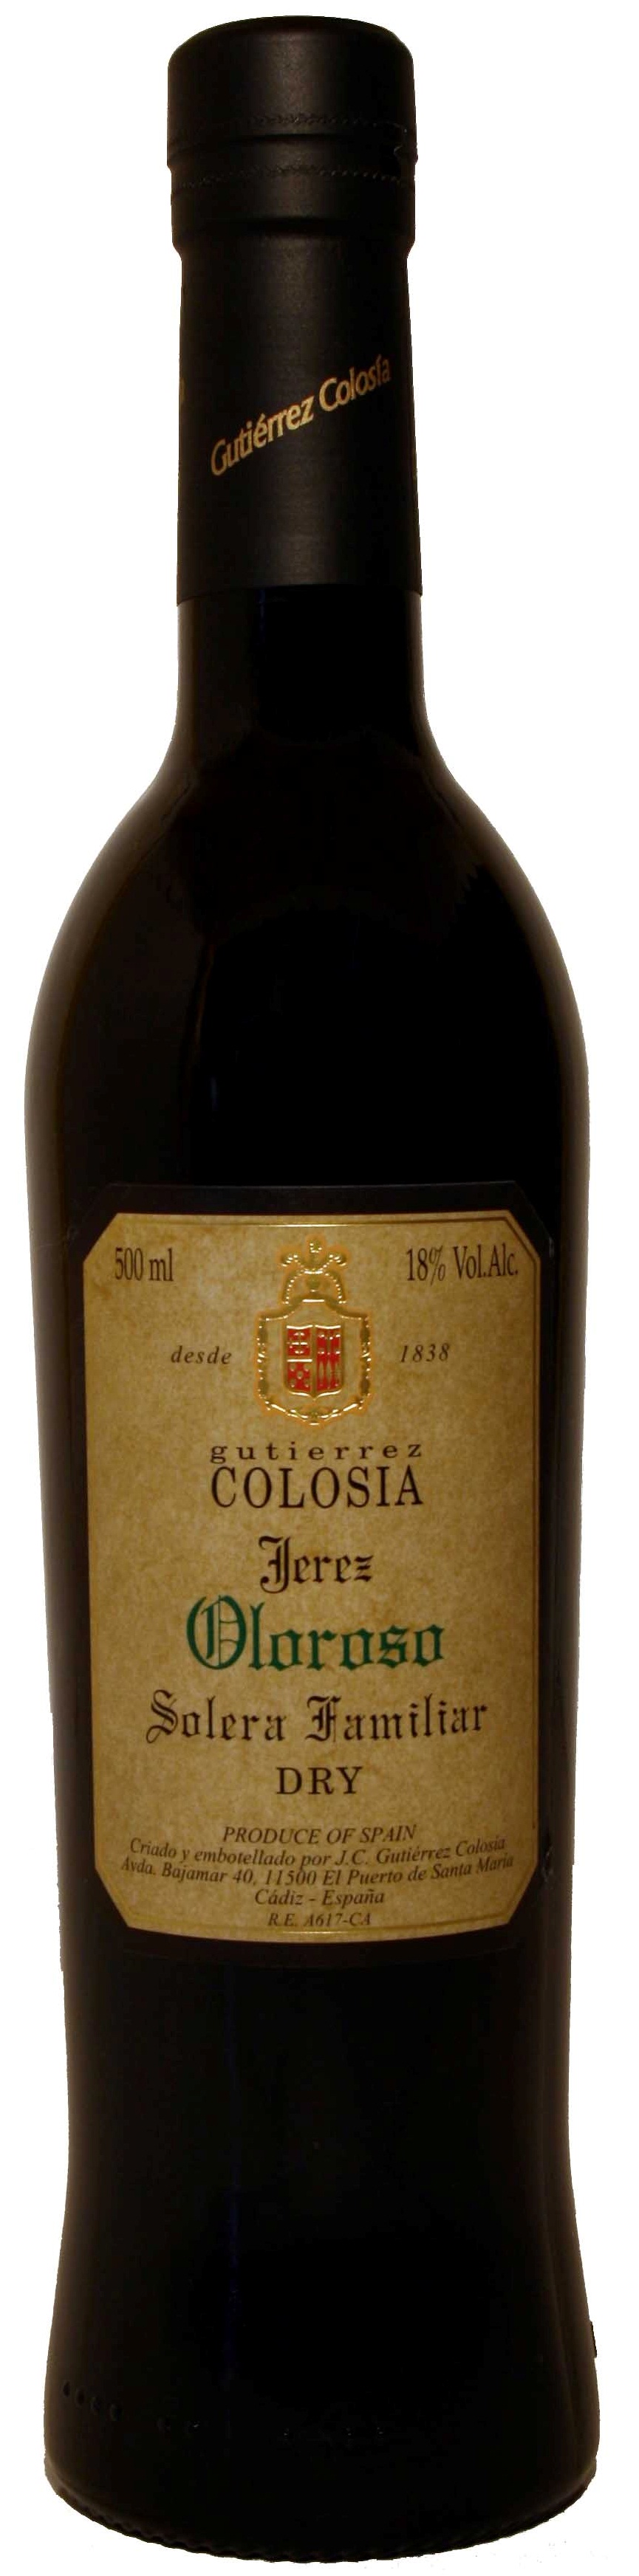 Bild von der Weinflasche Colosía Solera Familiar Oloroso